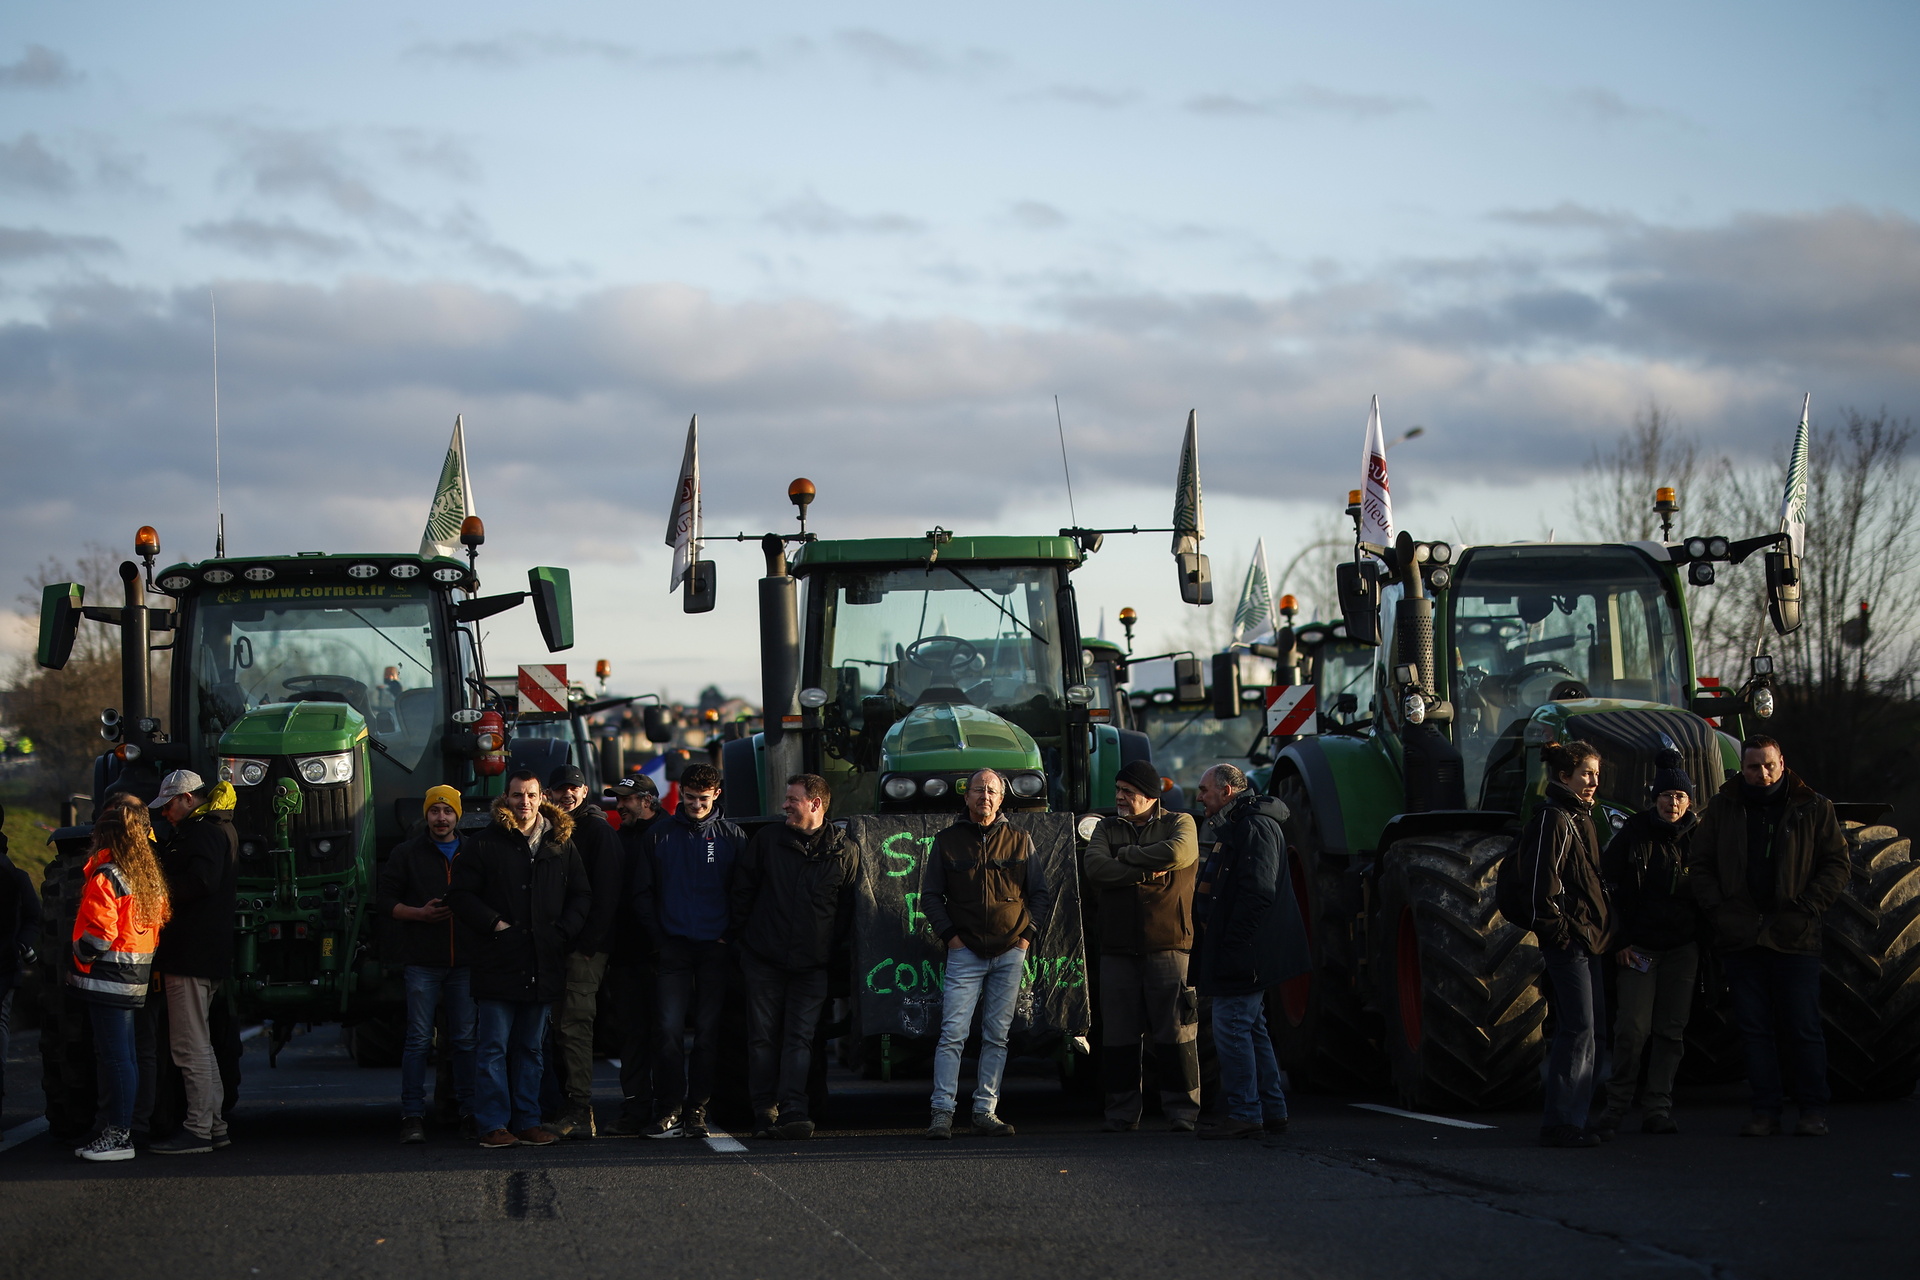 La imagen de tractores apostados cara a cara frente a las tanquetas policiales que vigilaban uno de los puntos de bloqueo de una autopista que conduce a París, auguraba que podían saltar chispas.